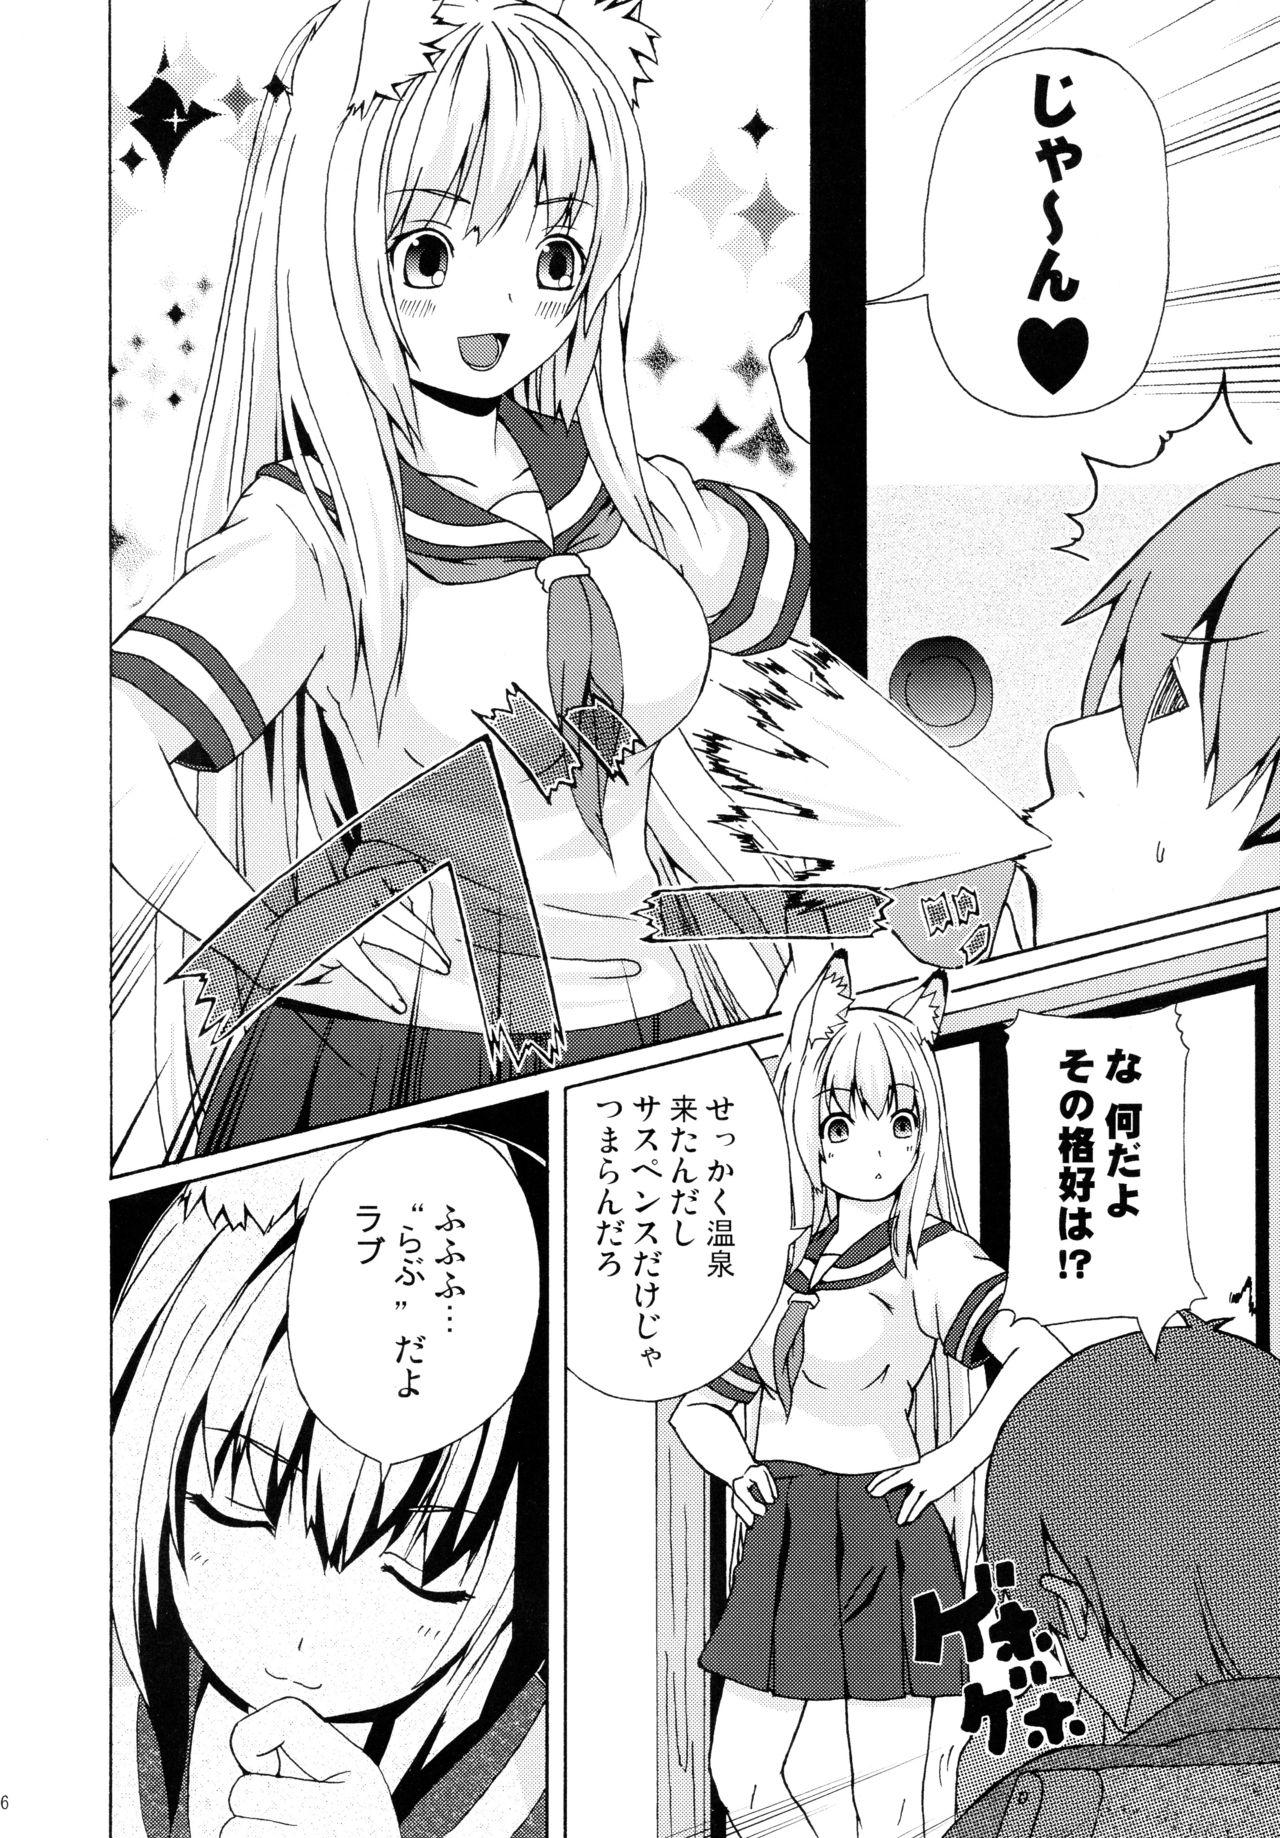 Vecina Hare, Tokidoki Oinari-sama 3 - Wagaya no oinari sama Solo Female - Page 6